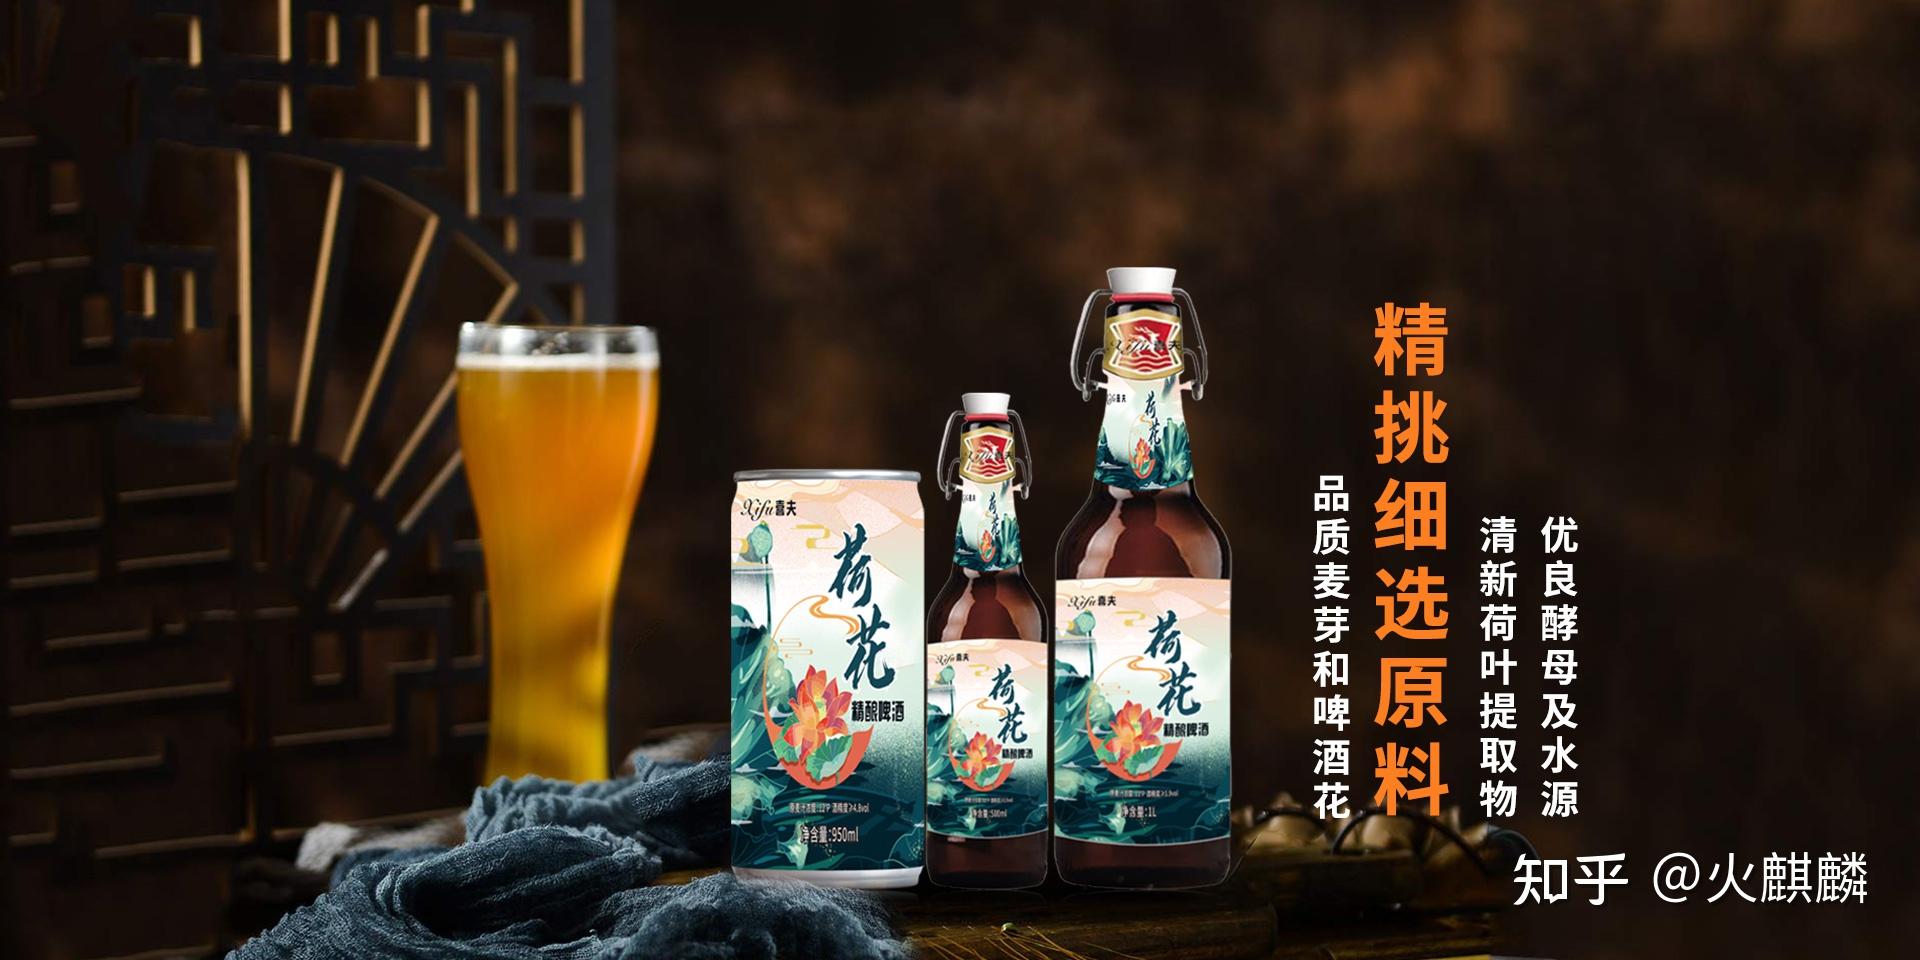 燕京啤酒赵晓东往事：29岁出任高管 “守业”关键期案发